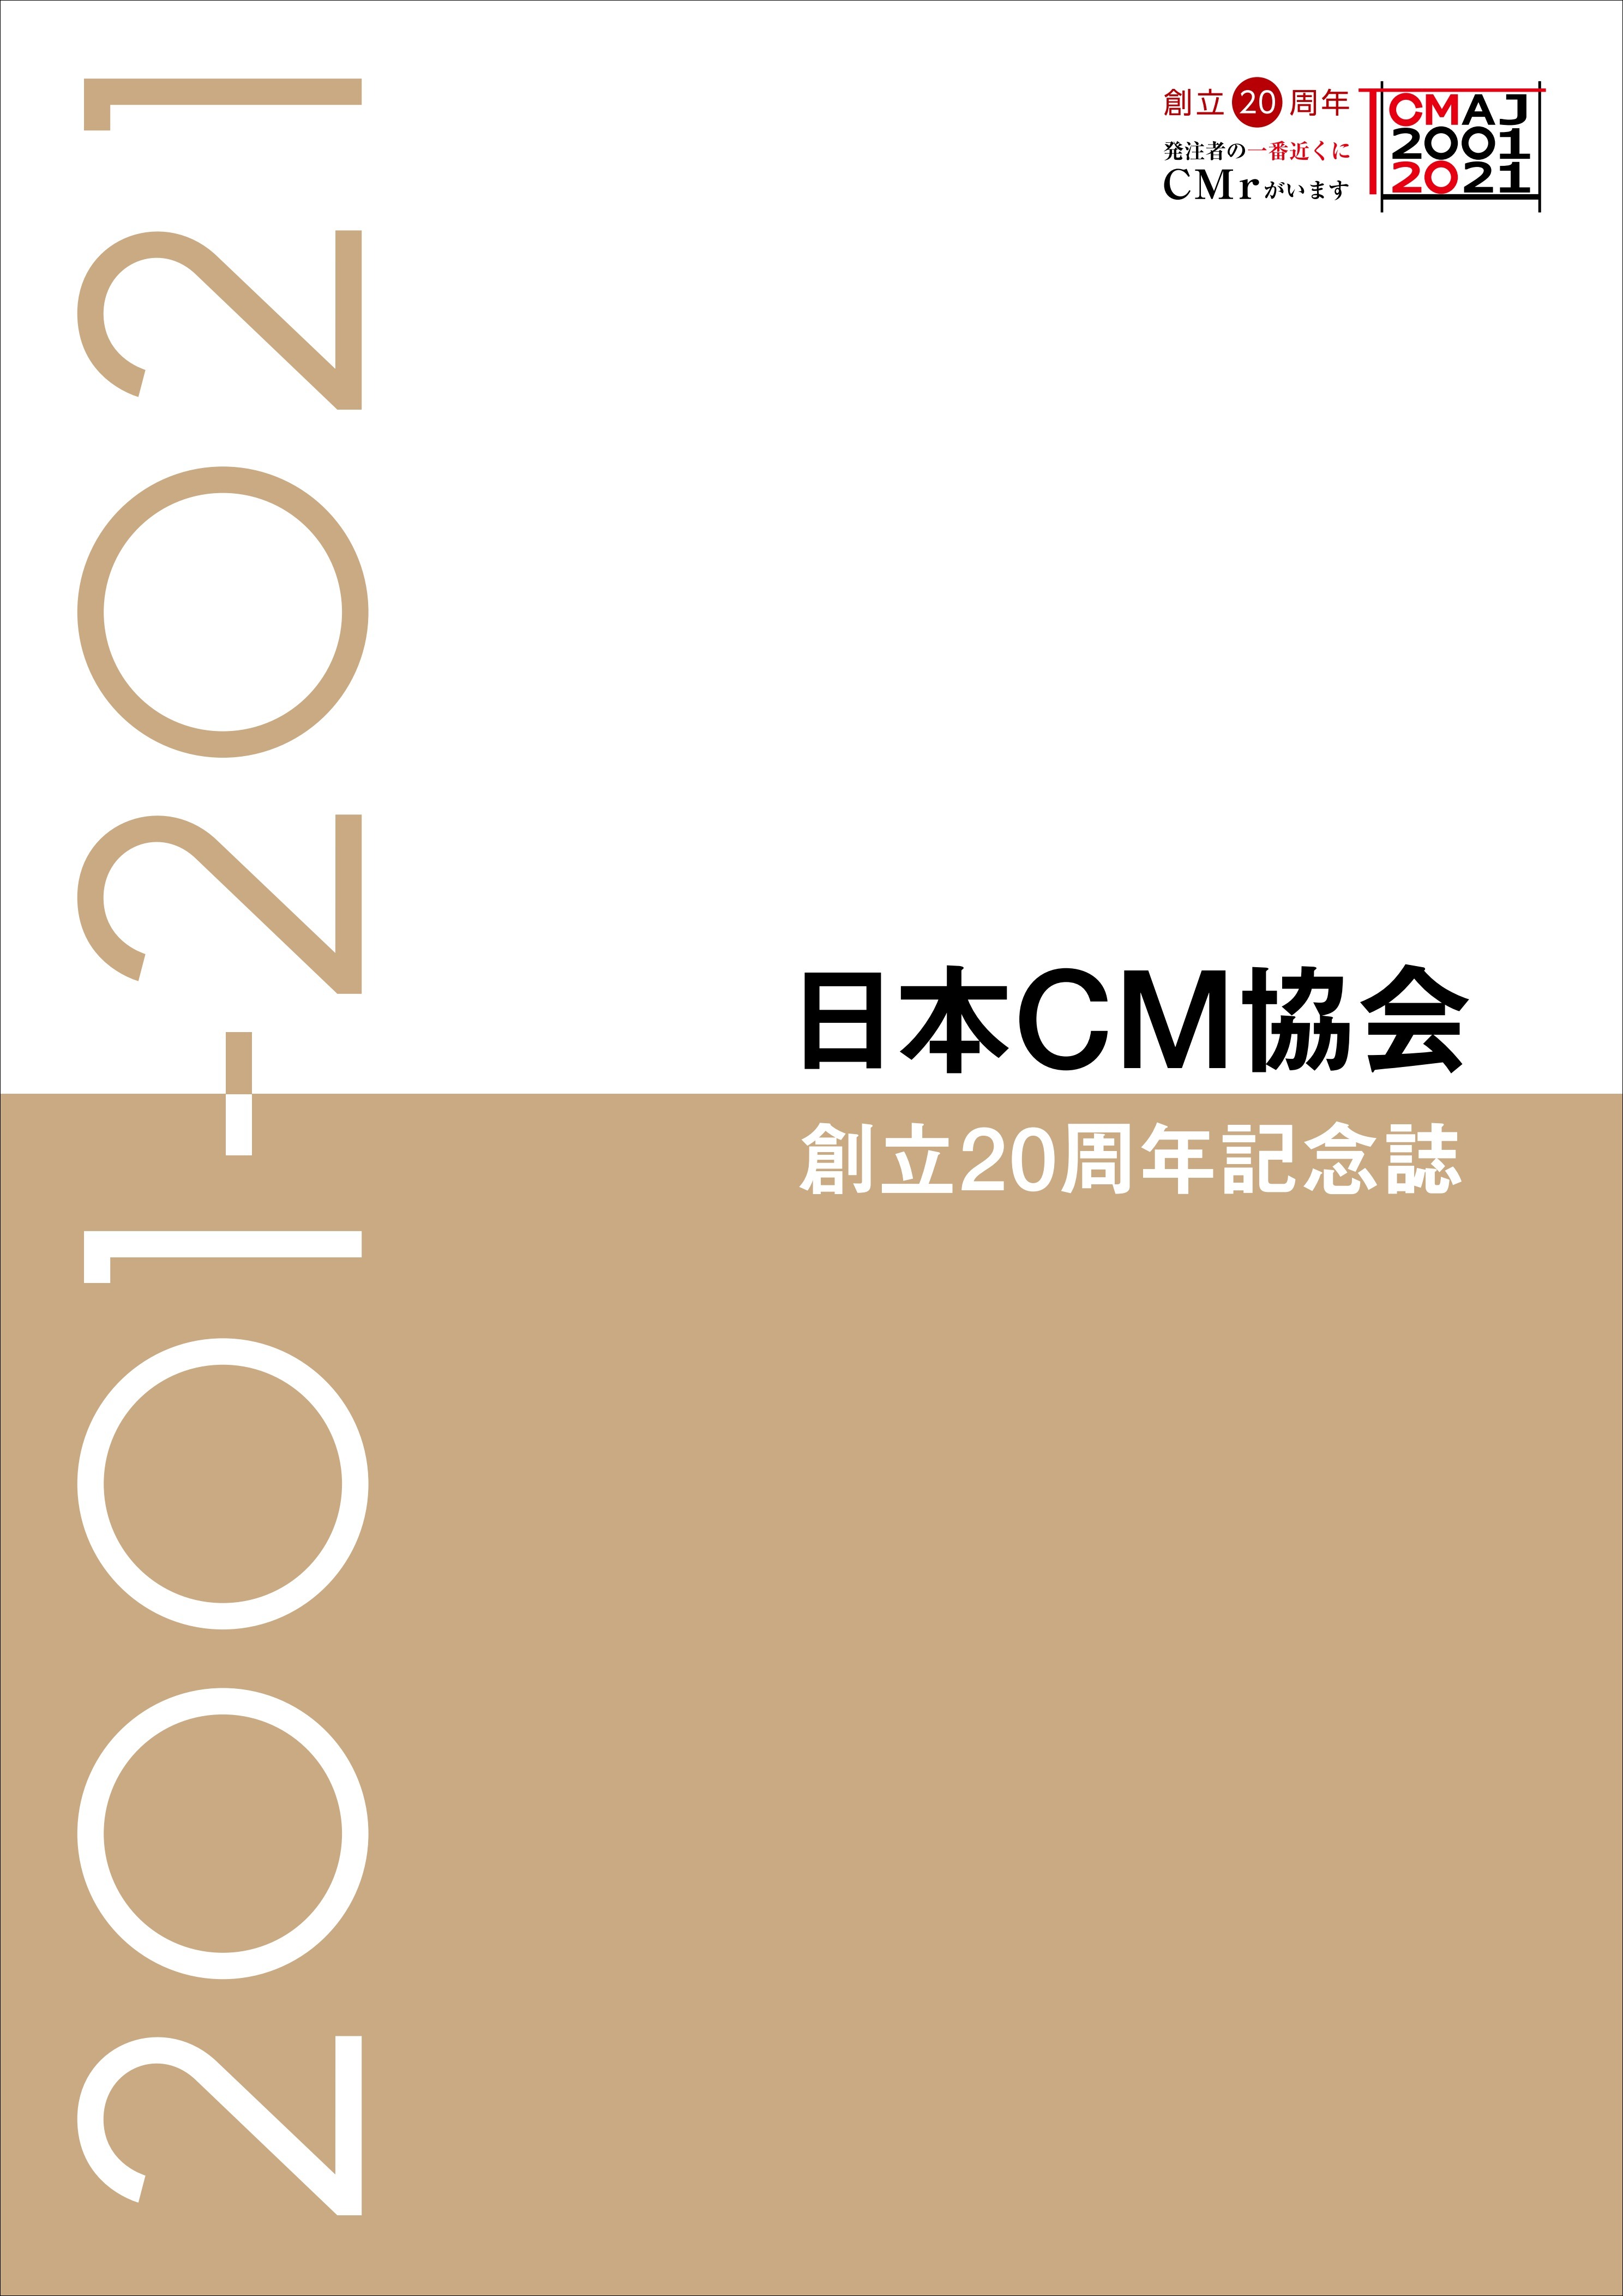 日本コンストラクション・マネジメント協会 『創立20周年記念誌』を発刊